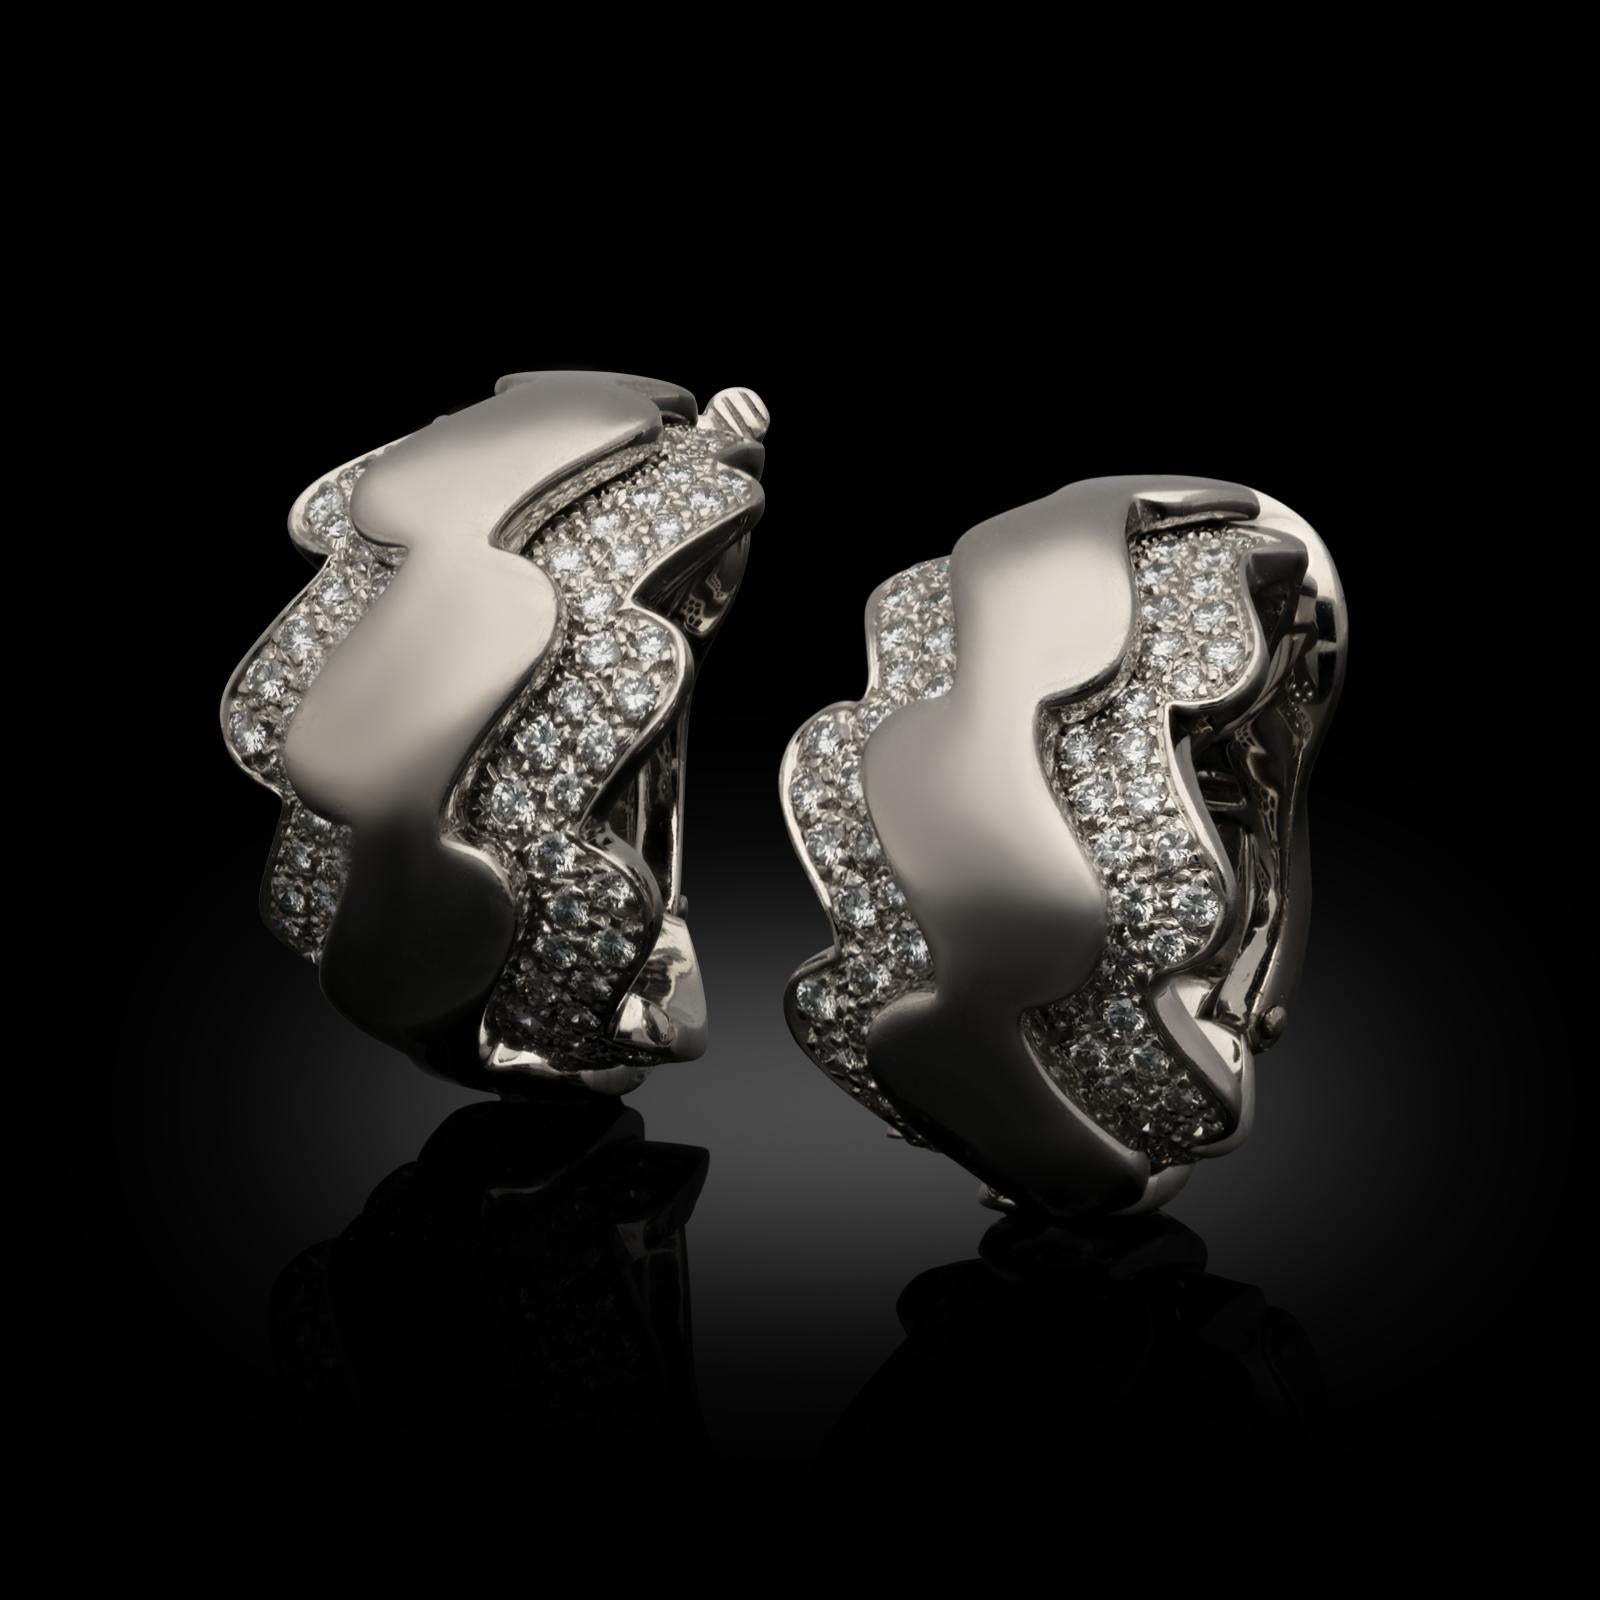 Une paire de boucles d'oreilles en or blanc 18ct et diamants par Van Cleef & Arpels vers les années 2000, les boucles d'oreilles en forme de cerceau de forme ondulante en or blanc ont une bande centrale surélevée d'or hautement poli bordée de chaque